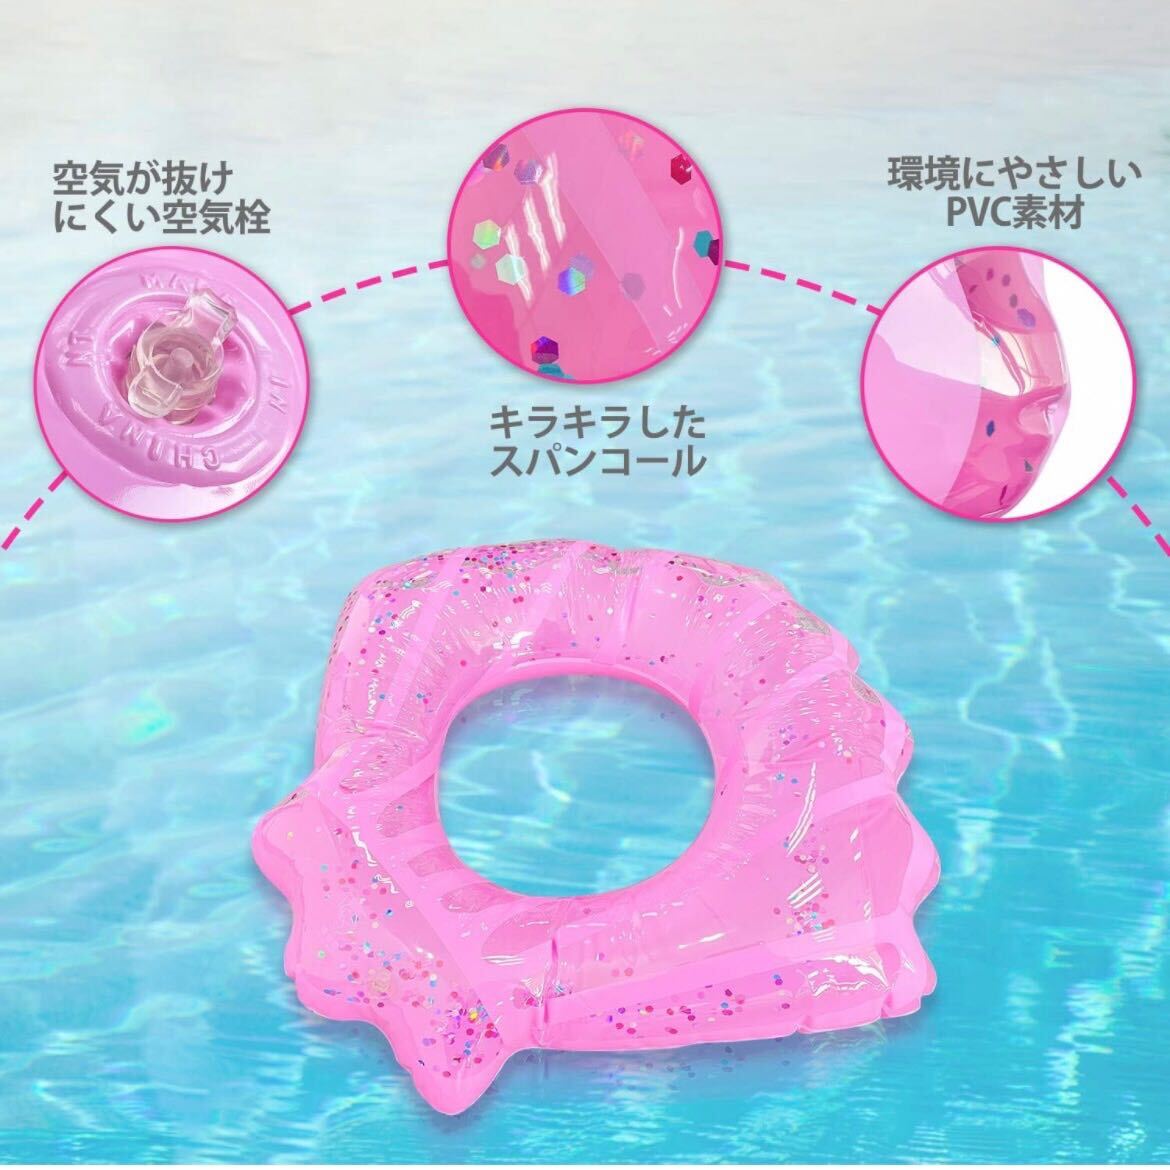 90 размер надувной круг бассейн плавучие средства плавание водные развлечения pi-chi бассейн 